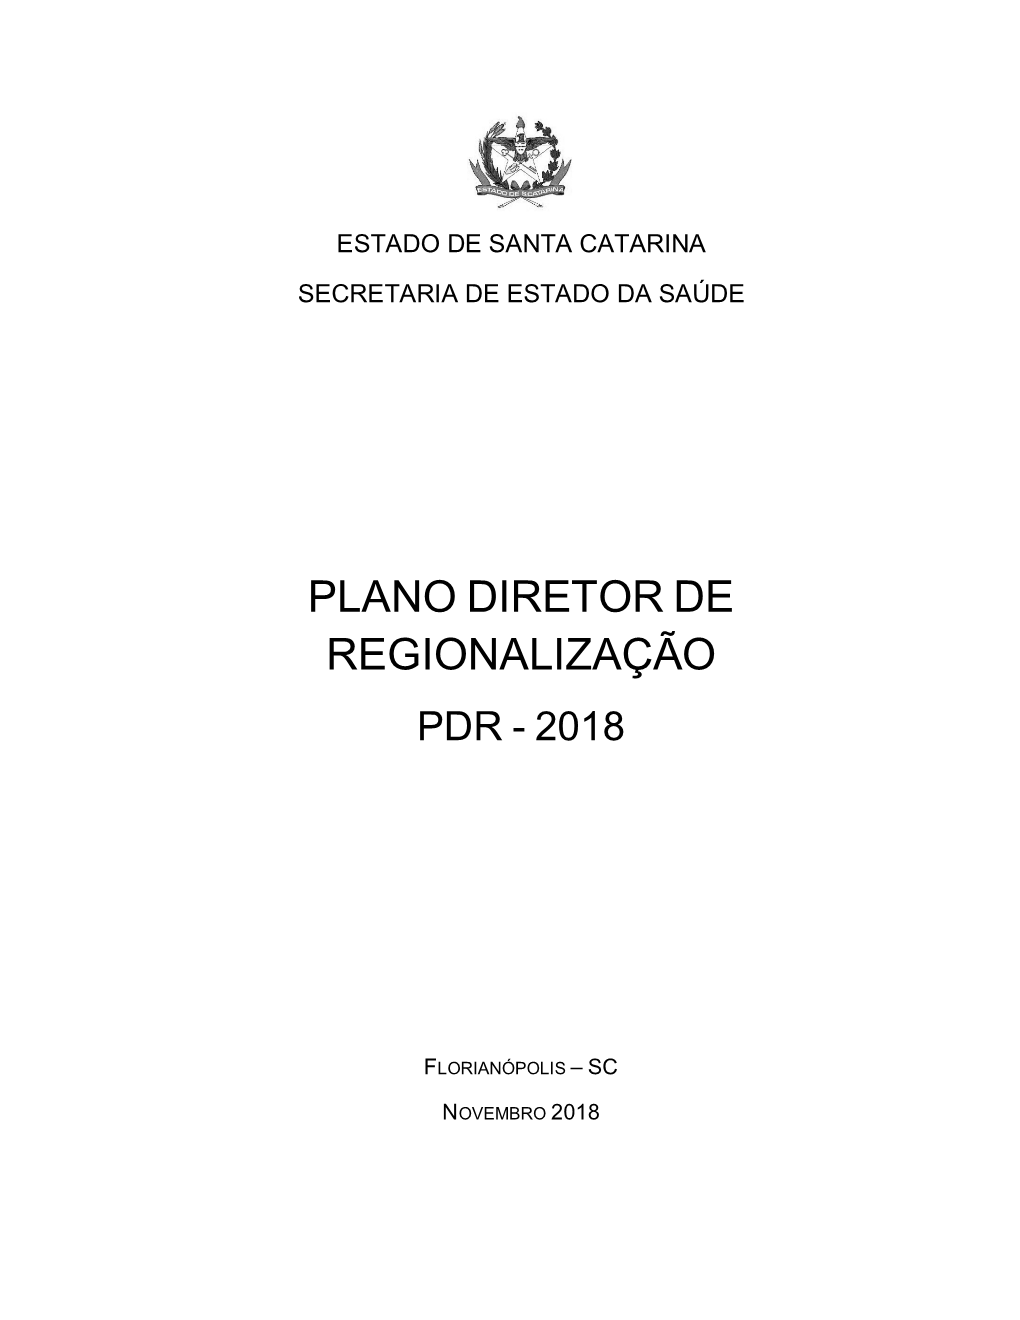 Plano Diretor De Regionalização 2018